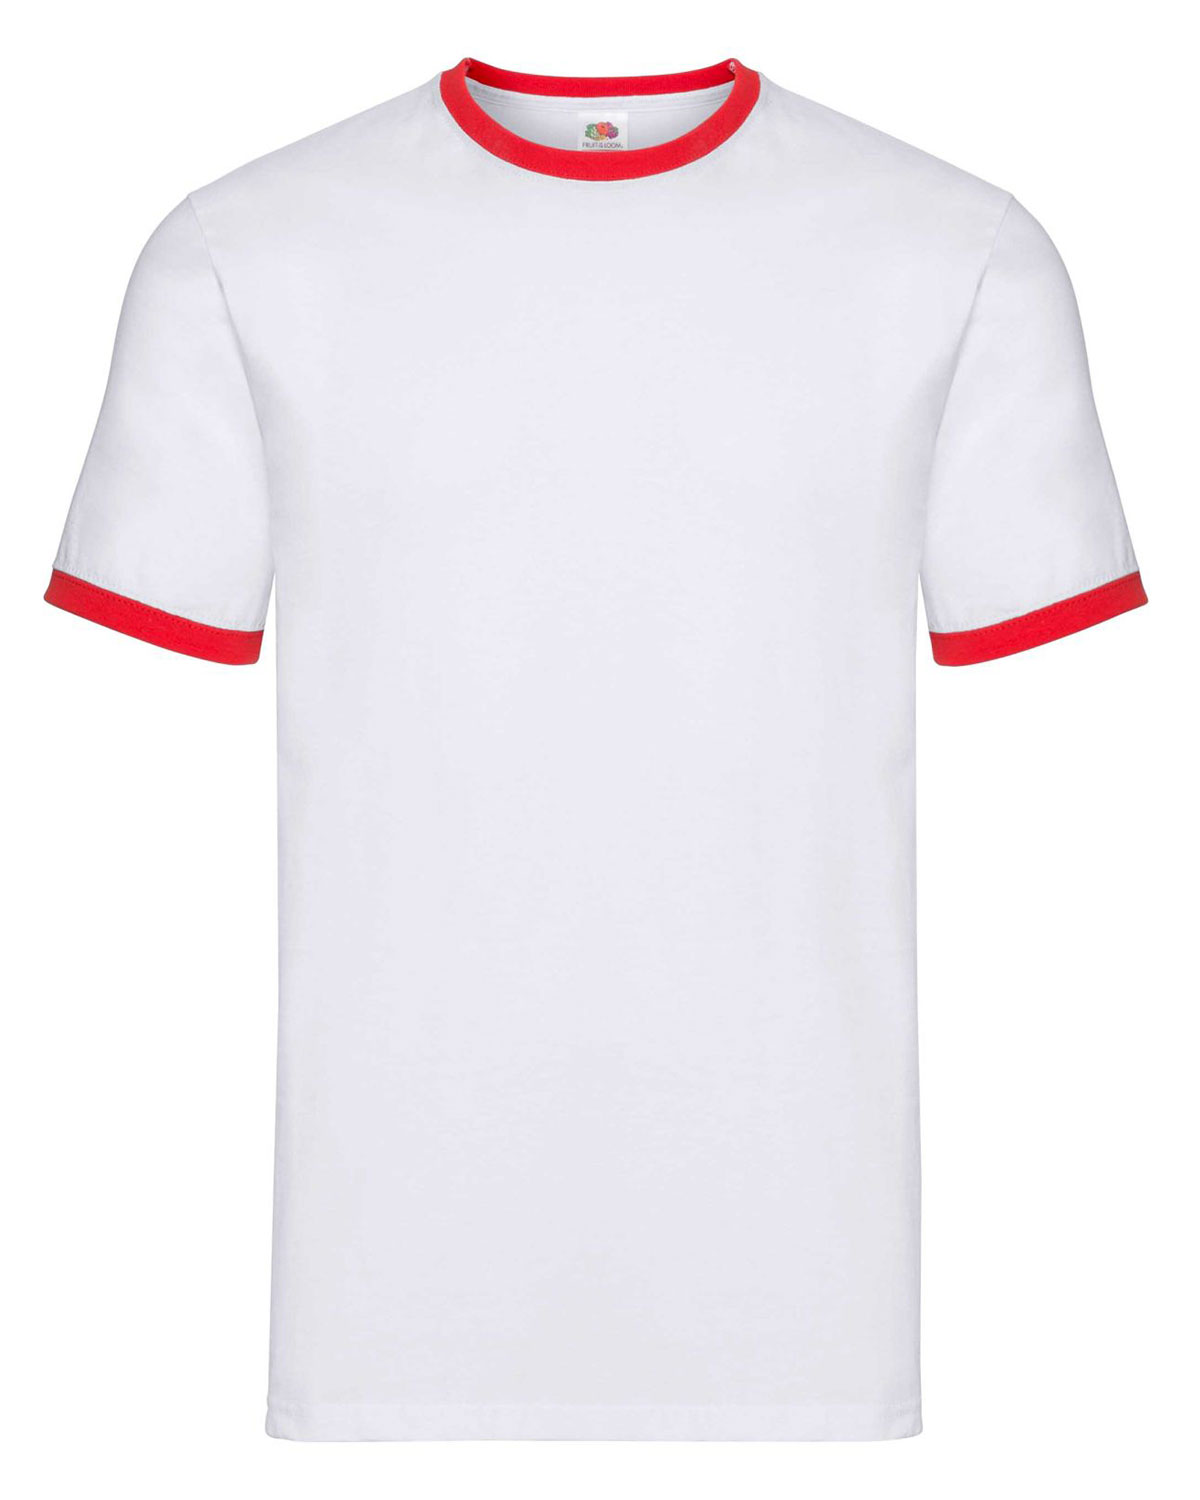 Ringer T-Shirt White/Red XXL